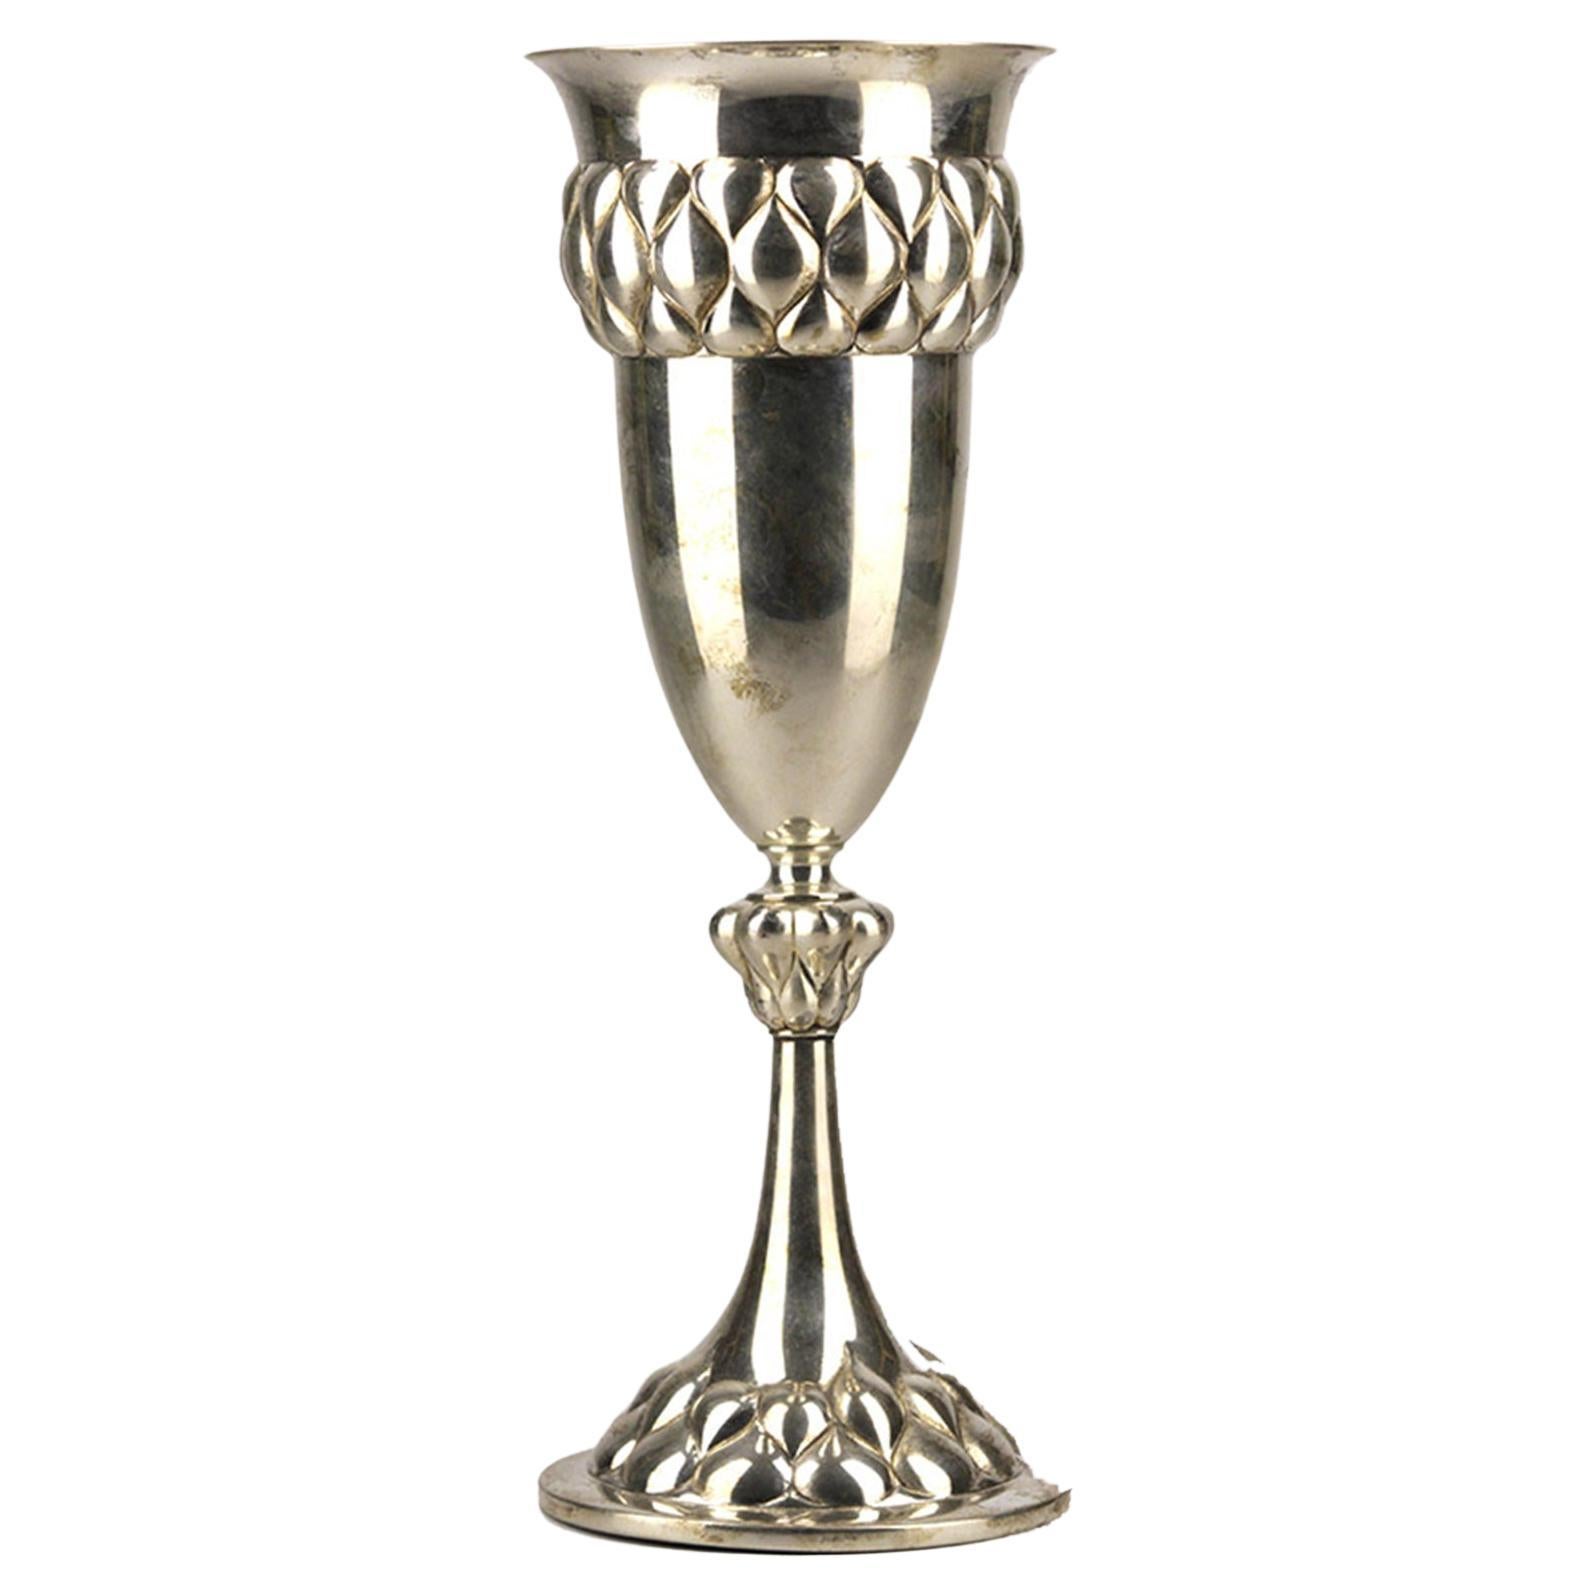 Jugendstil German Silver Plated Chalice-Shaped Presentation Trophy Vase by WMF For Sale